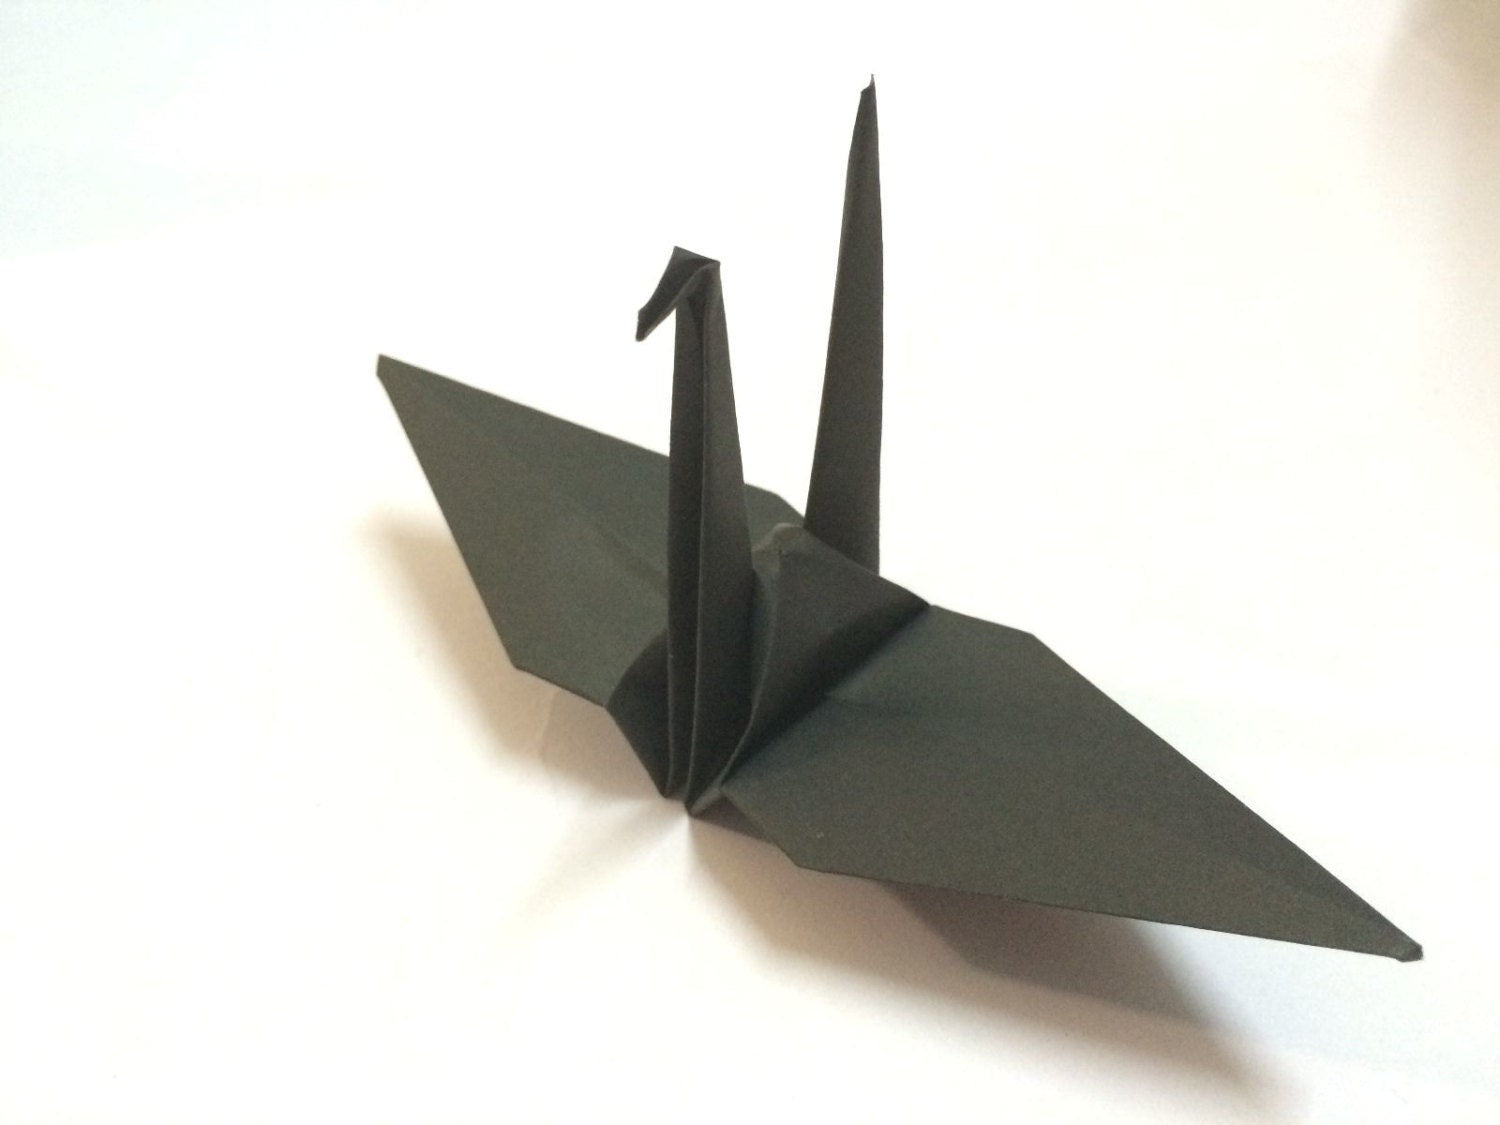 100 gru origami - nere - 15 cm (6 pollici) - per decorazioni di nozze, regali di anniversario, San Valentino, fondali